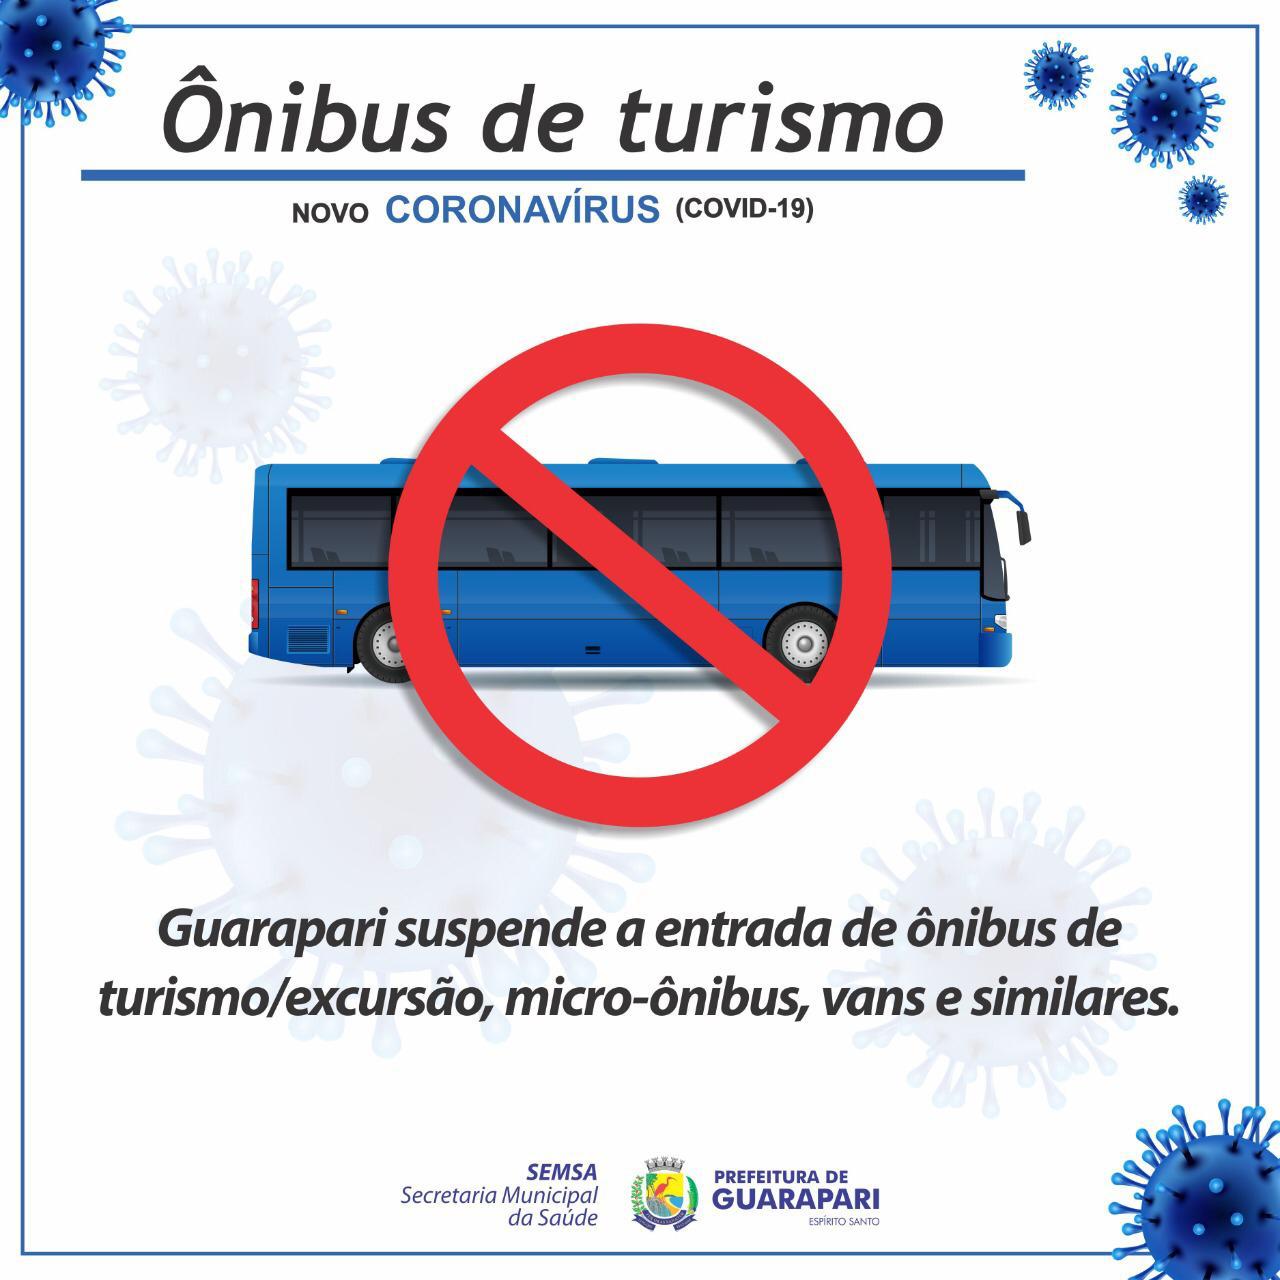 Prefeitura de Guarapari suspende a entrada de ônibus de turismo, vans e micro-ônibus na cidade